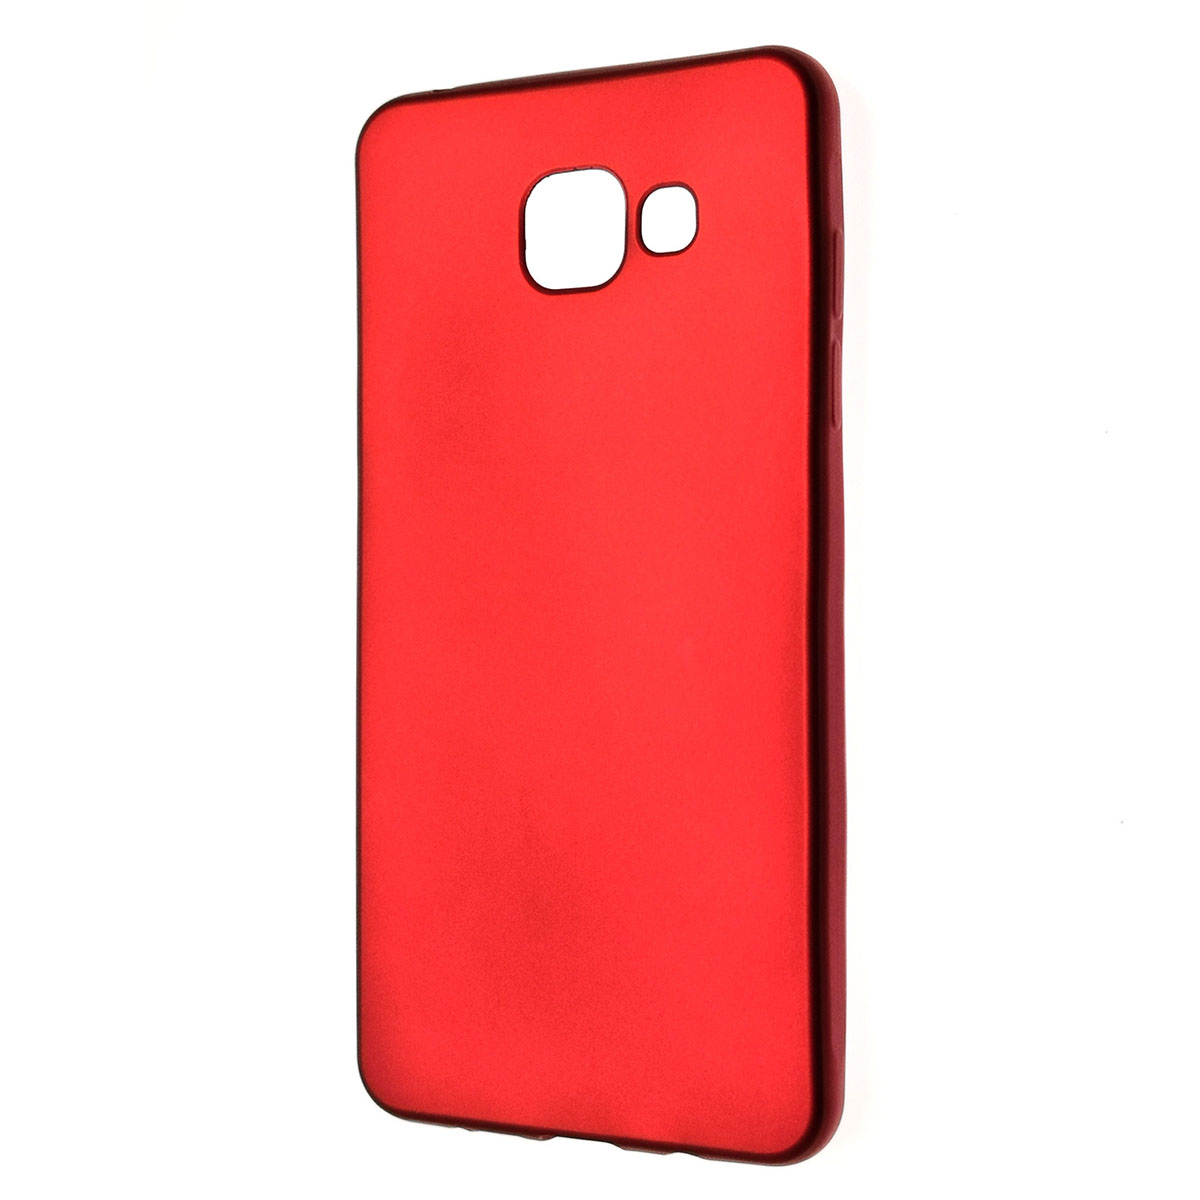 Чехол накладка J-Case THIN для SAMSUNG Galaxy A5 2016, силикон, цвет красный.